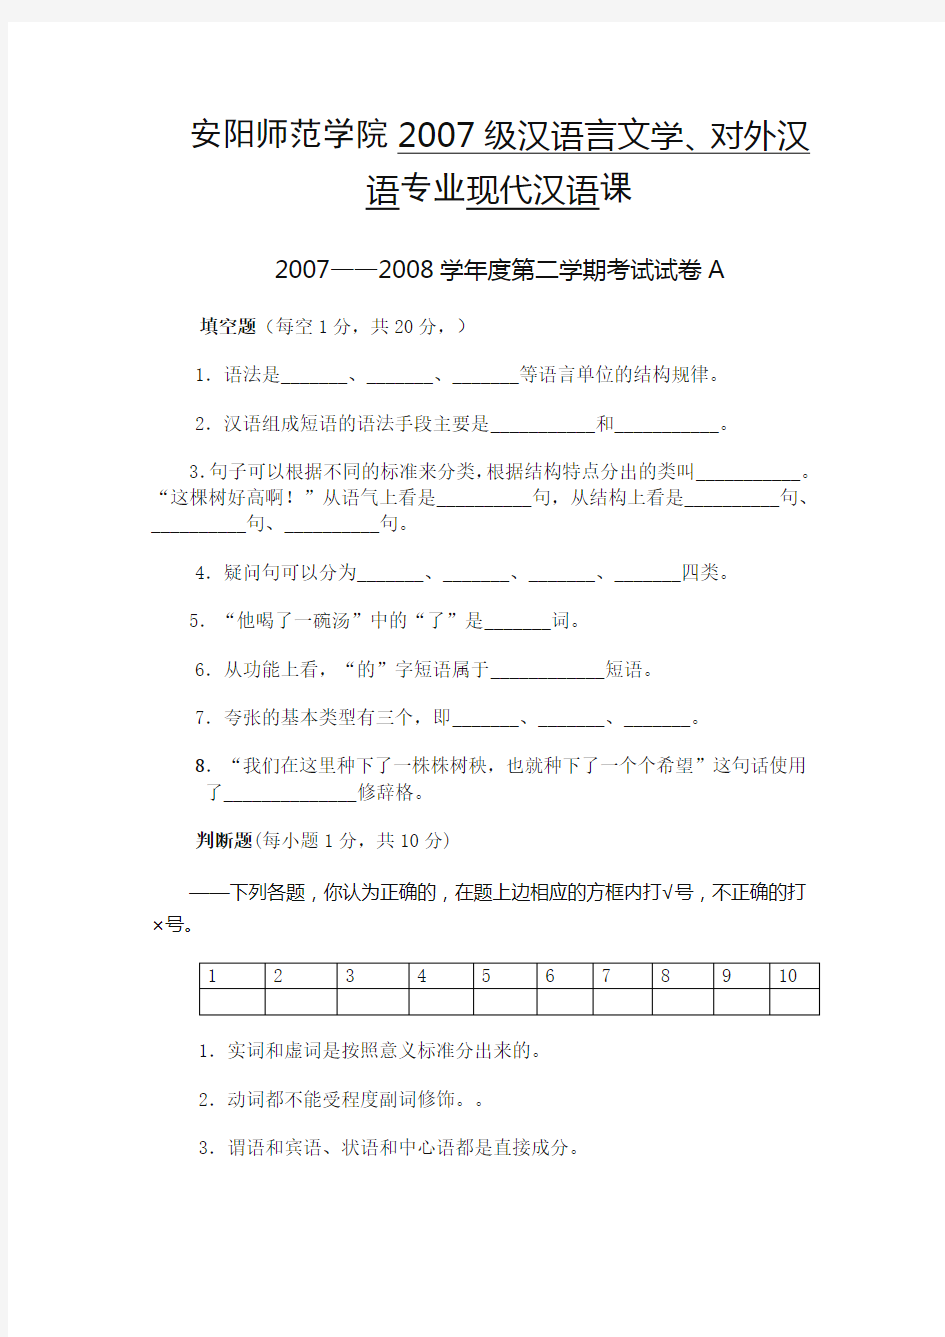 安阳师范学院2007级汉语言文学、对外汉语专业现代汉语课-2007——2008学年度第二学期考试试卷(一)